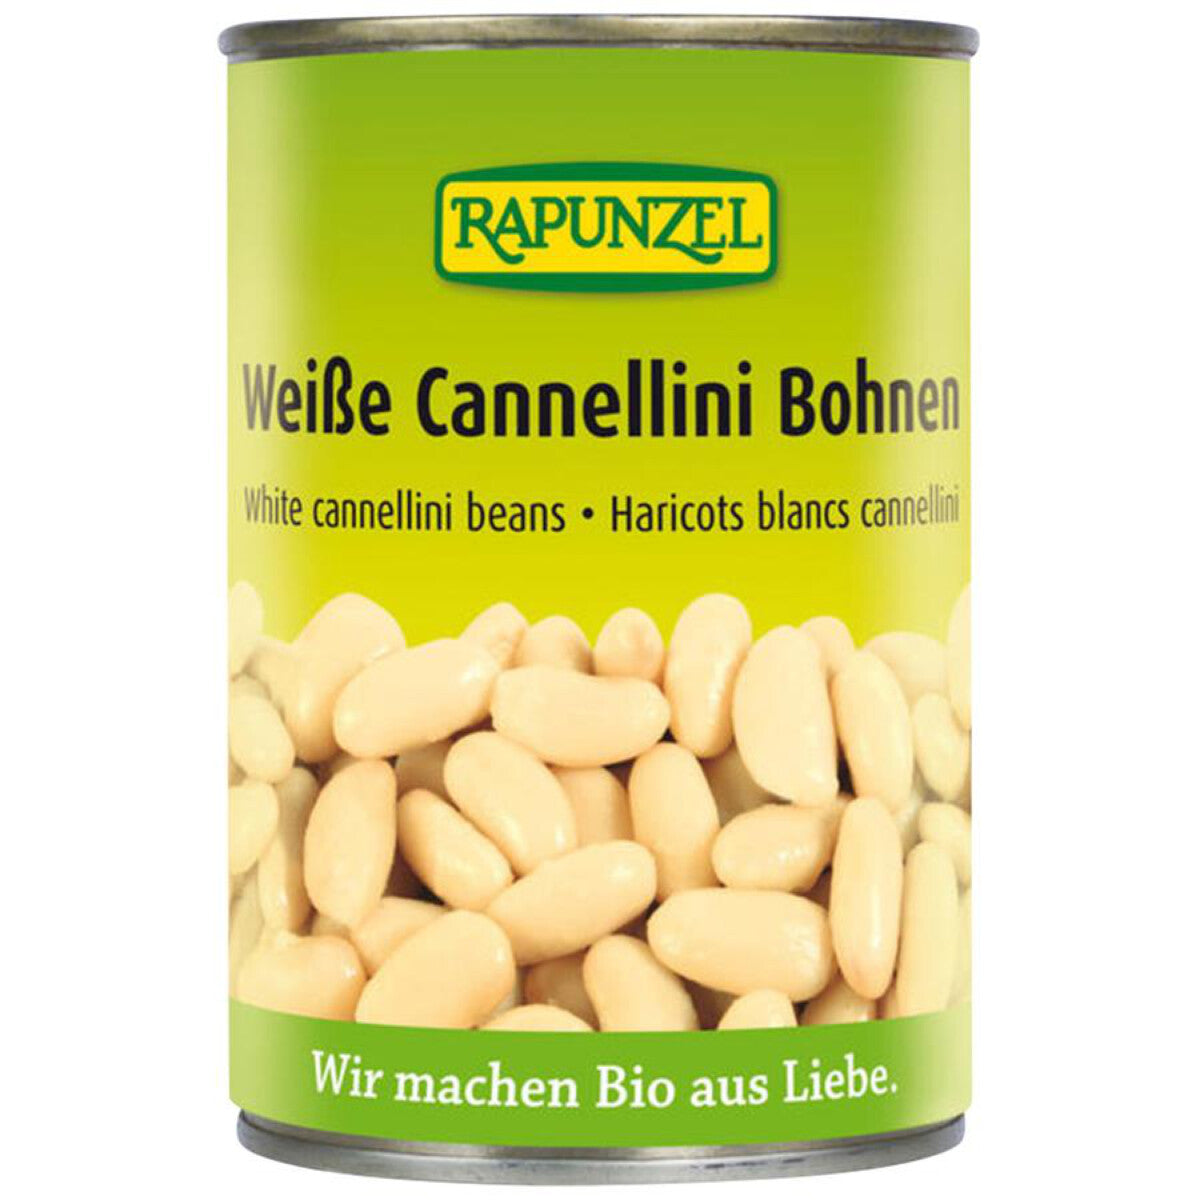 RAPUNZEL Weiße Cannellini Bohnen - 400 g